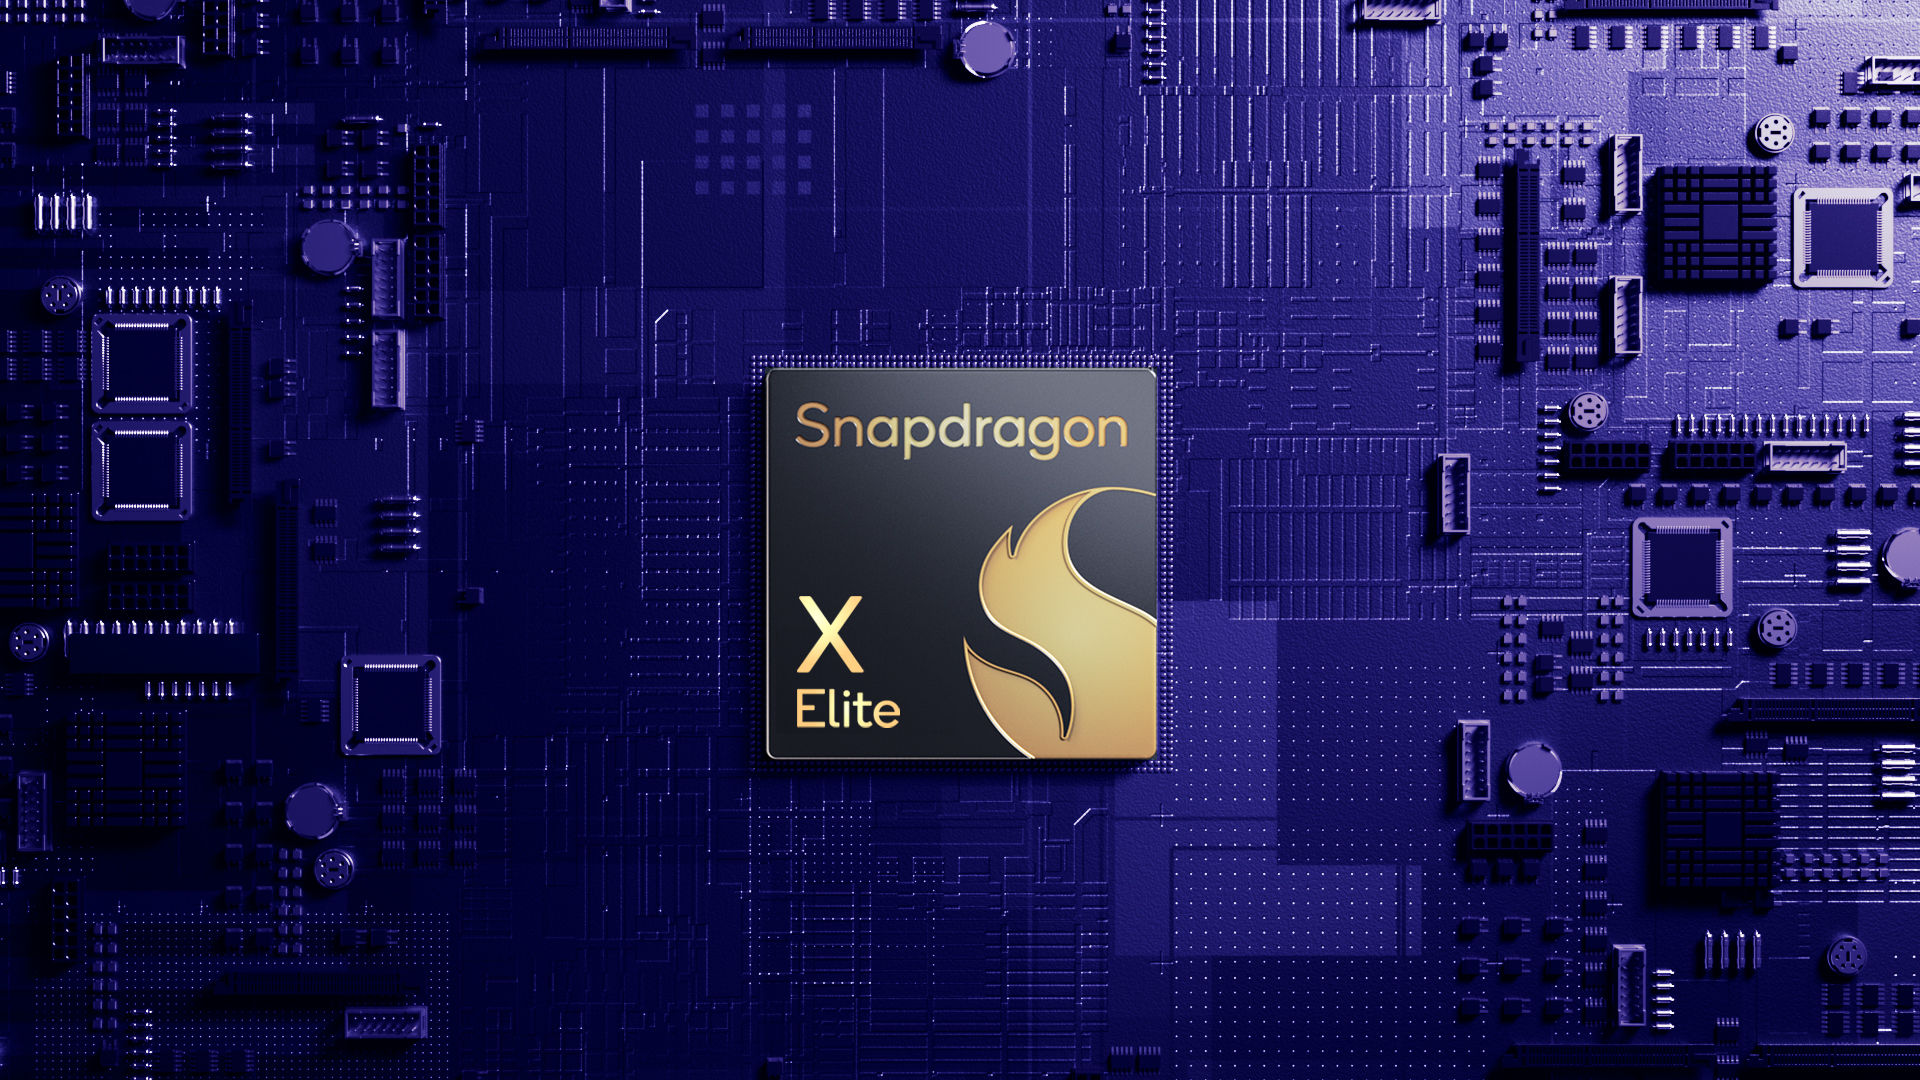 Twierdzenia Qualcomm dotyczące wydajności układu Snapdragon X Elite nie były do końca szczere